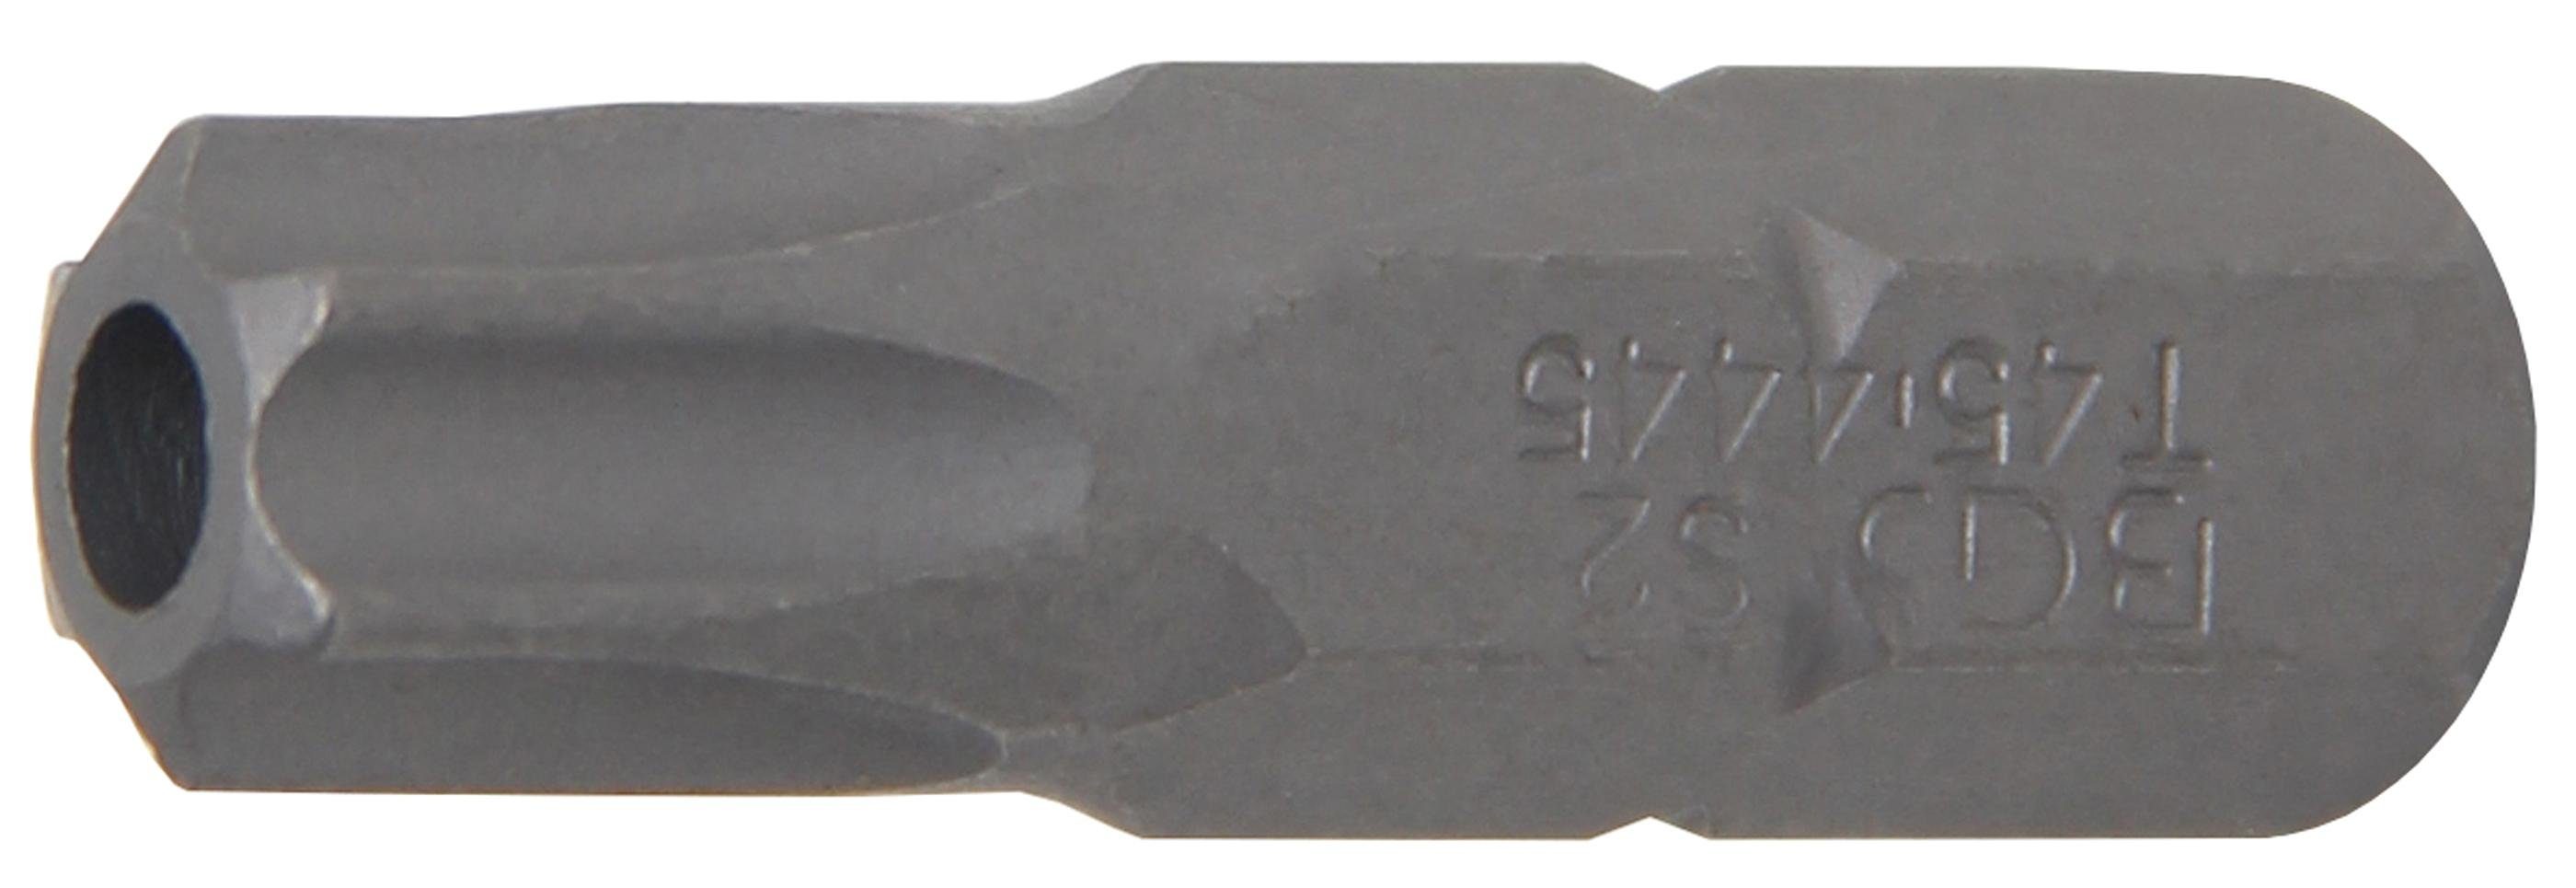 BGS technic Bit-Schraubendreher Bit, Länge 30 mm, Antrieb Außensechskant 8 mm (5/16), T-Profil (für Torx) mit Bohrung T45